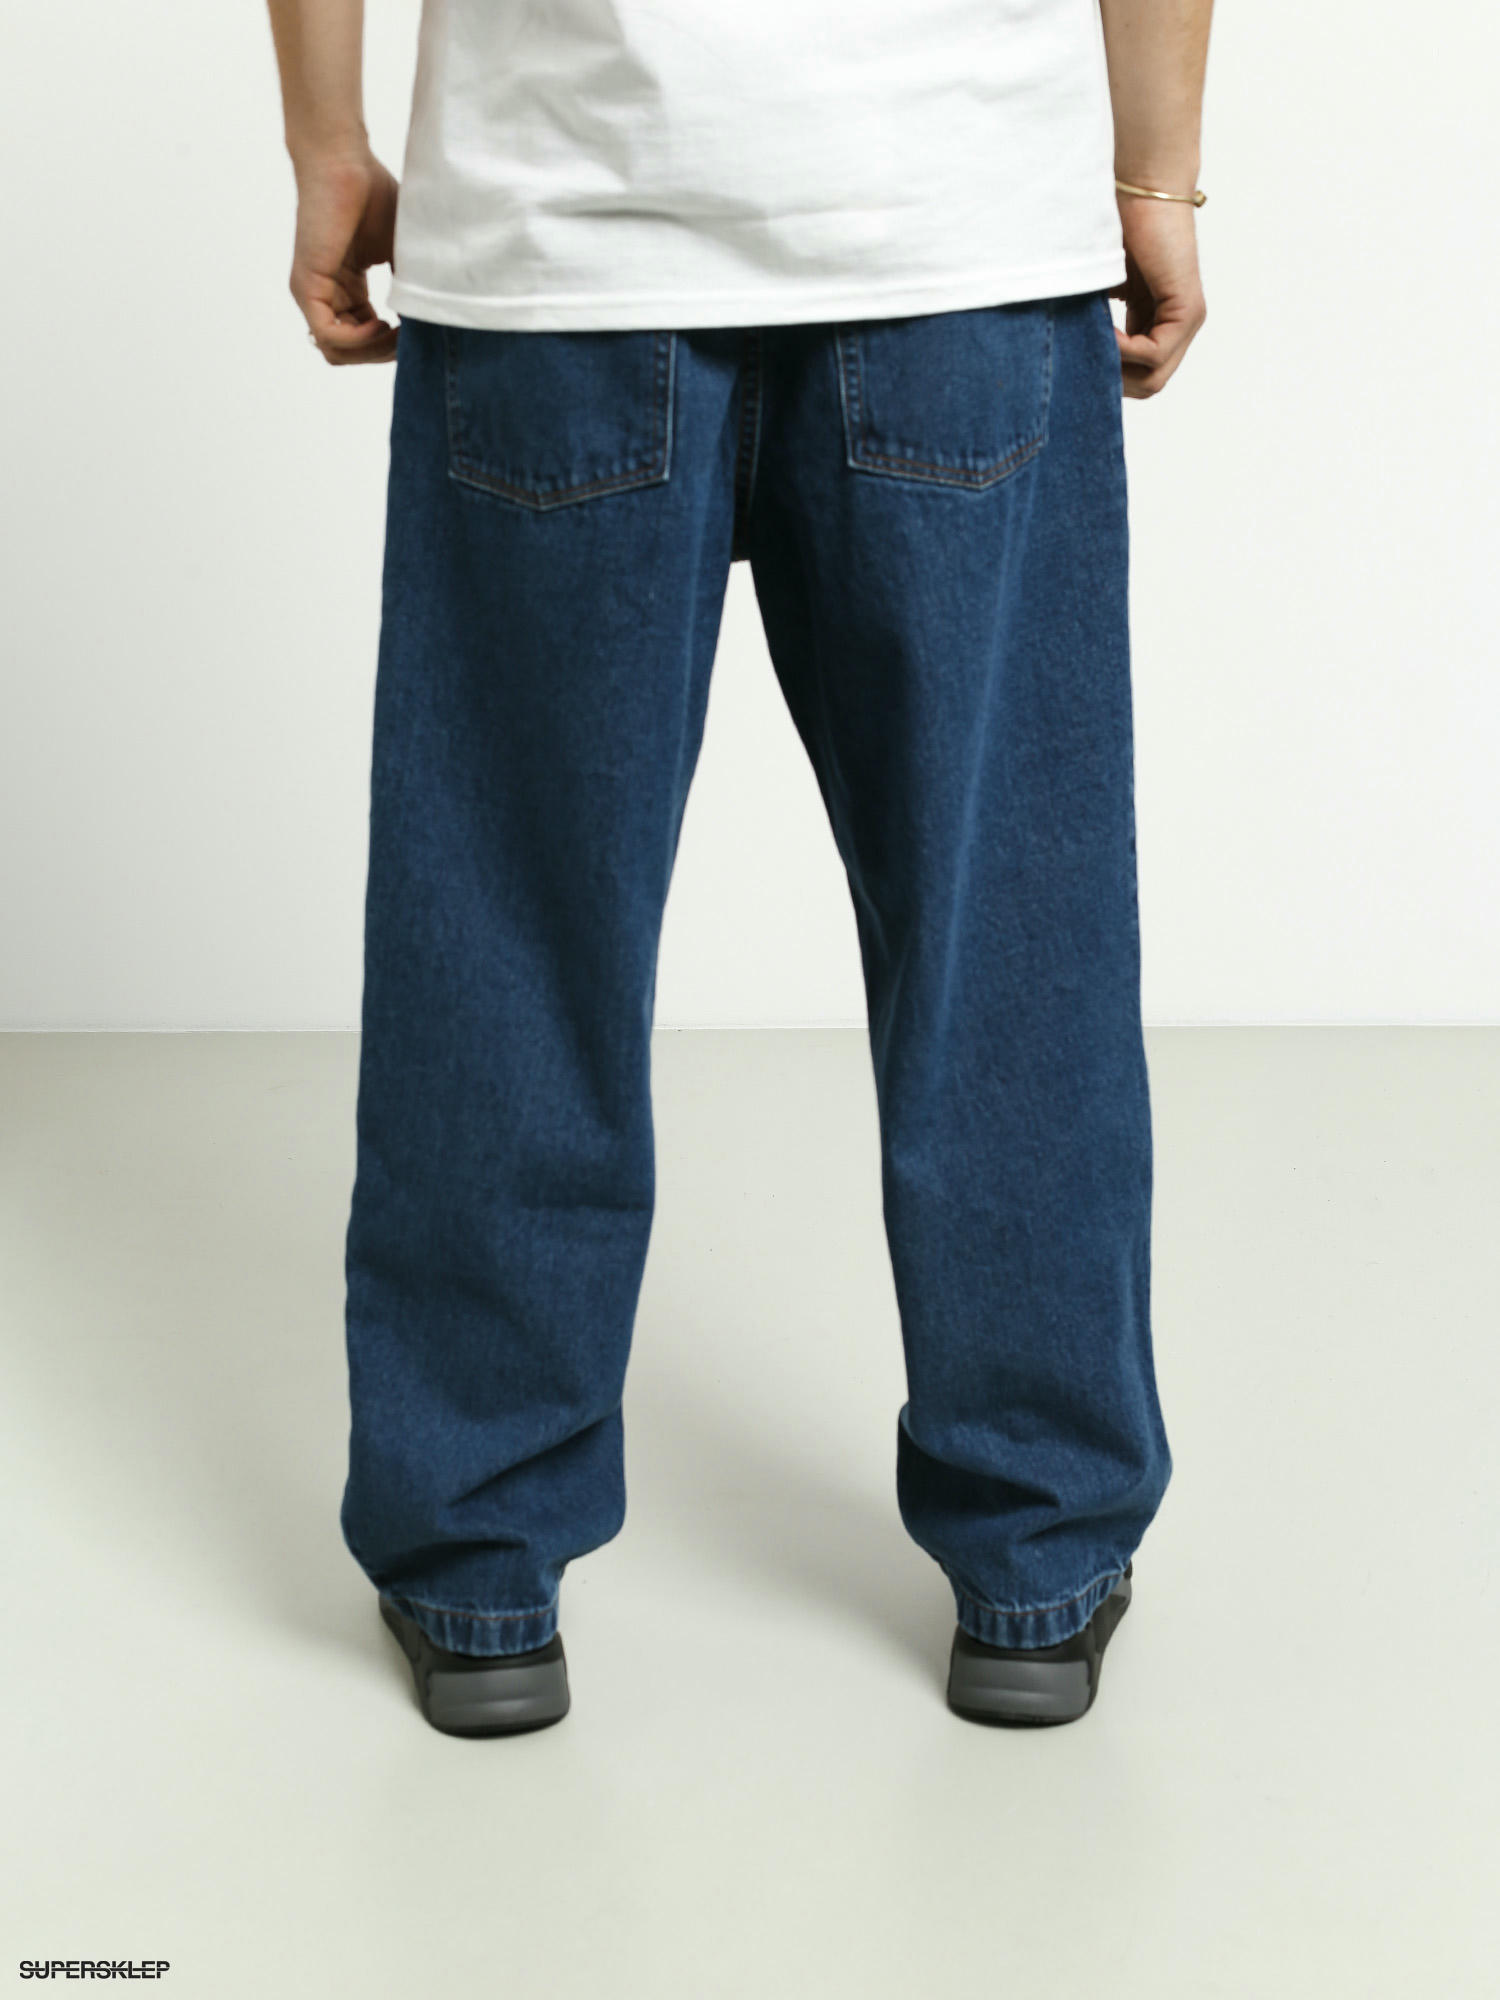 Pantaloni Polar Skate Big Boy Jeans (dark blue)